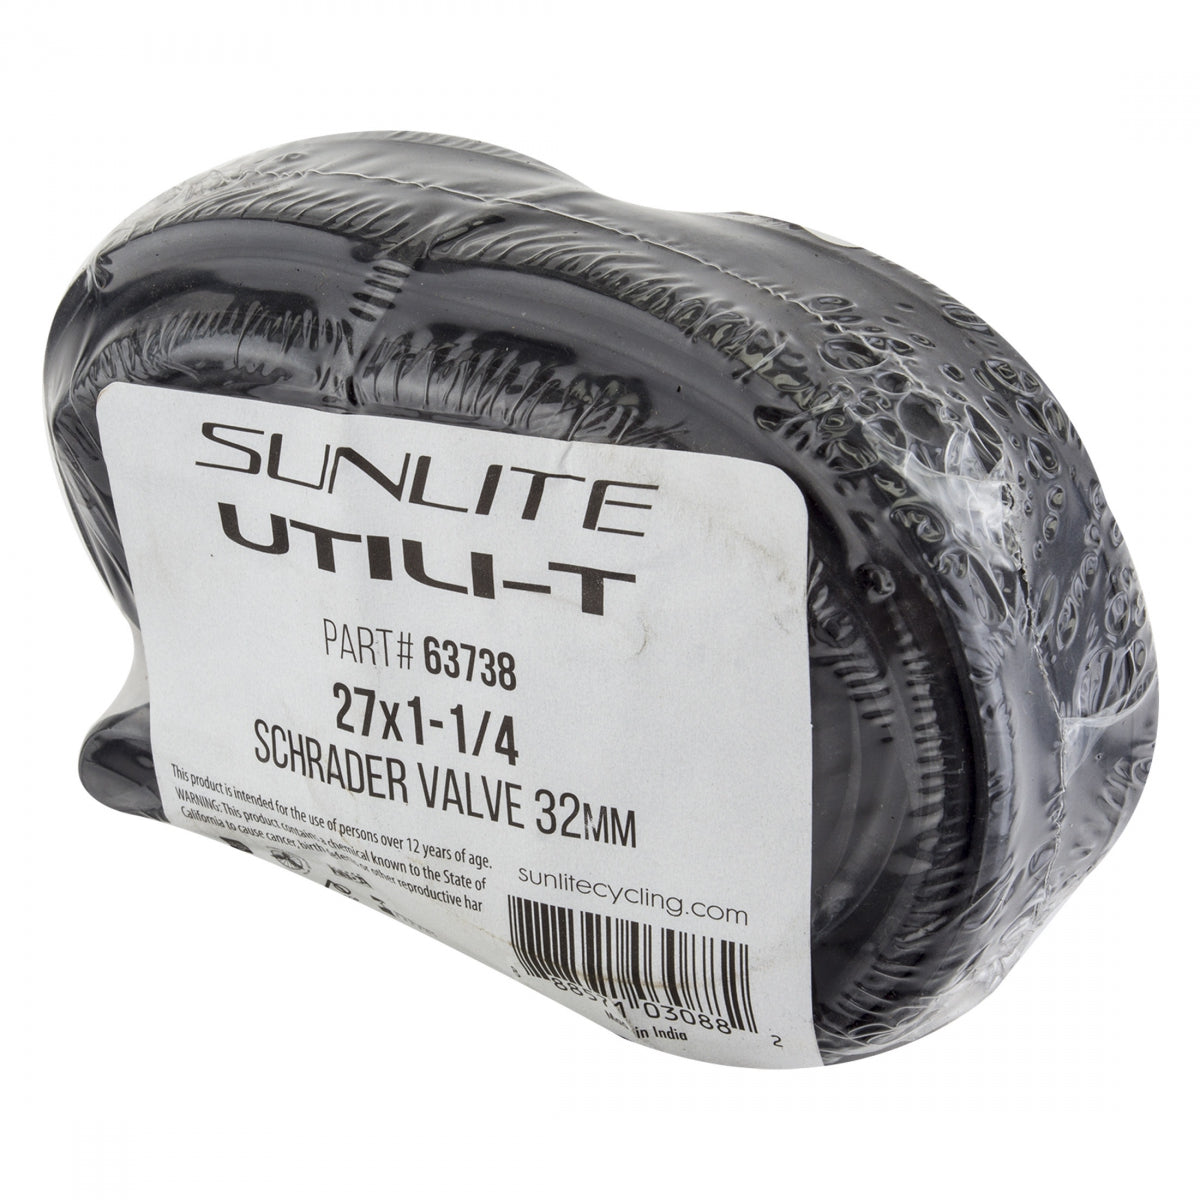 Tube Sunlite Utilit Bulk 27X1-1/4 Sv32 Bxof50 Ffw32Mm